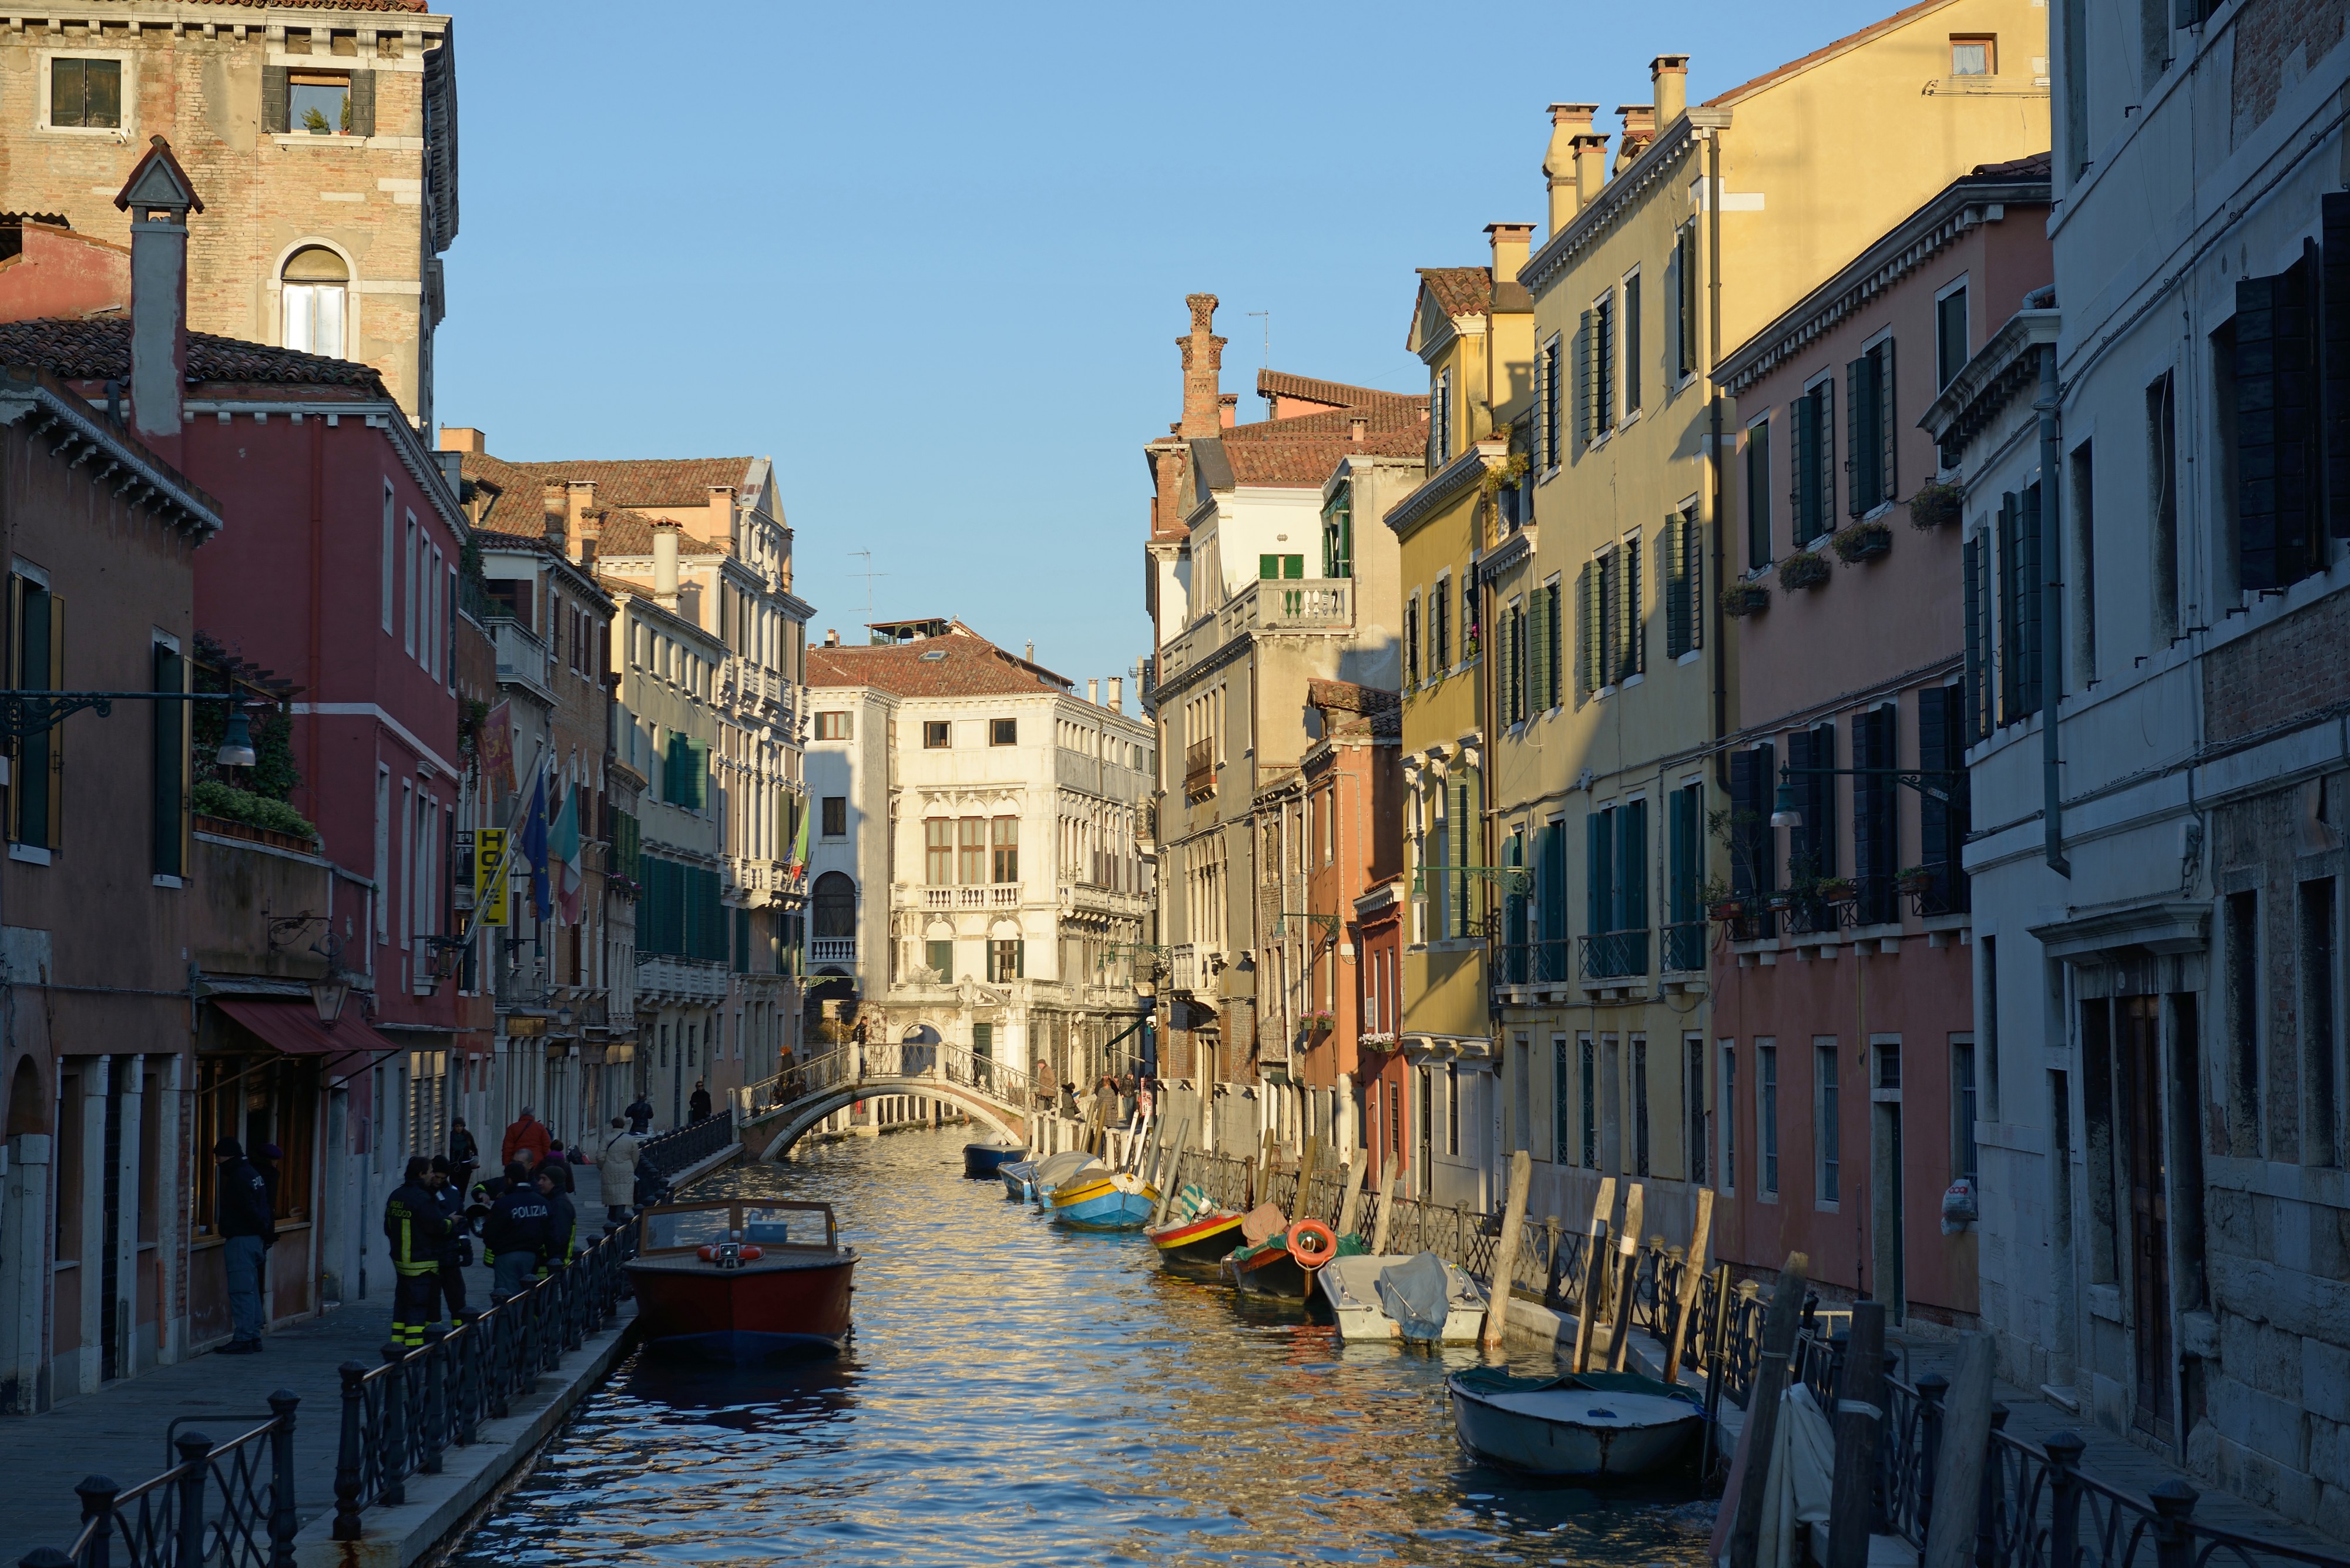 Rio Marin in Venice